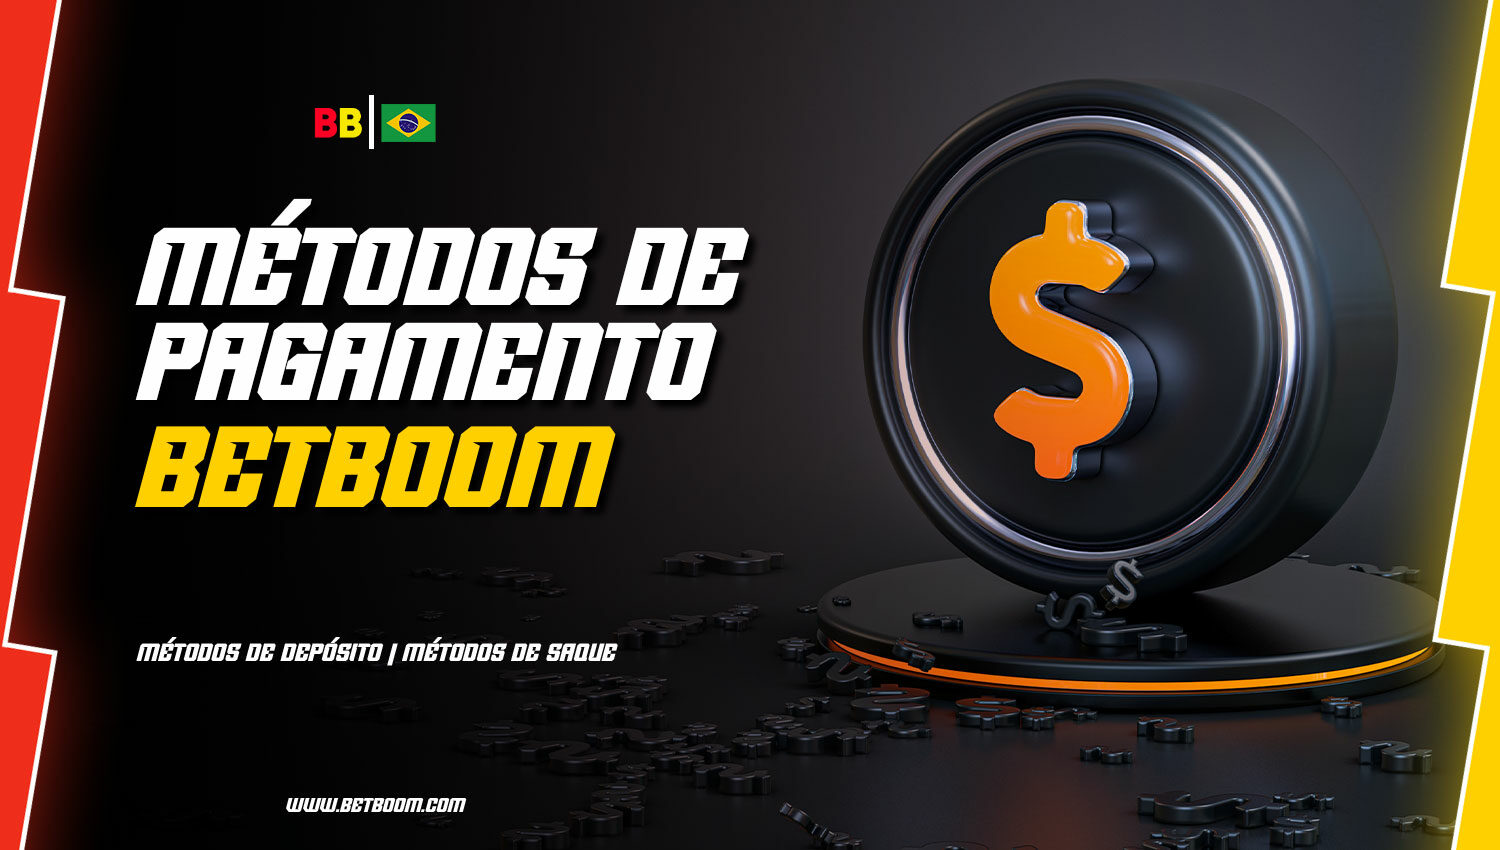 Descrição detalhada dos métodos de depósito e saque disponíveis na plataforma BetBoom para jogadores do Brasil